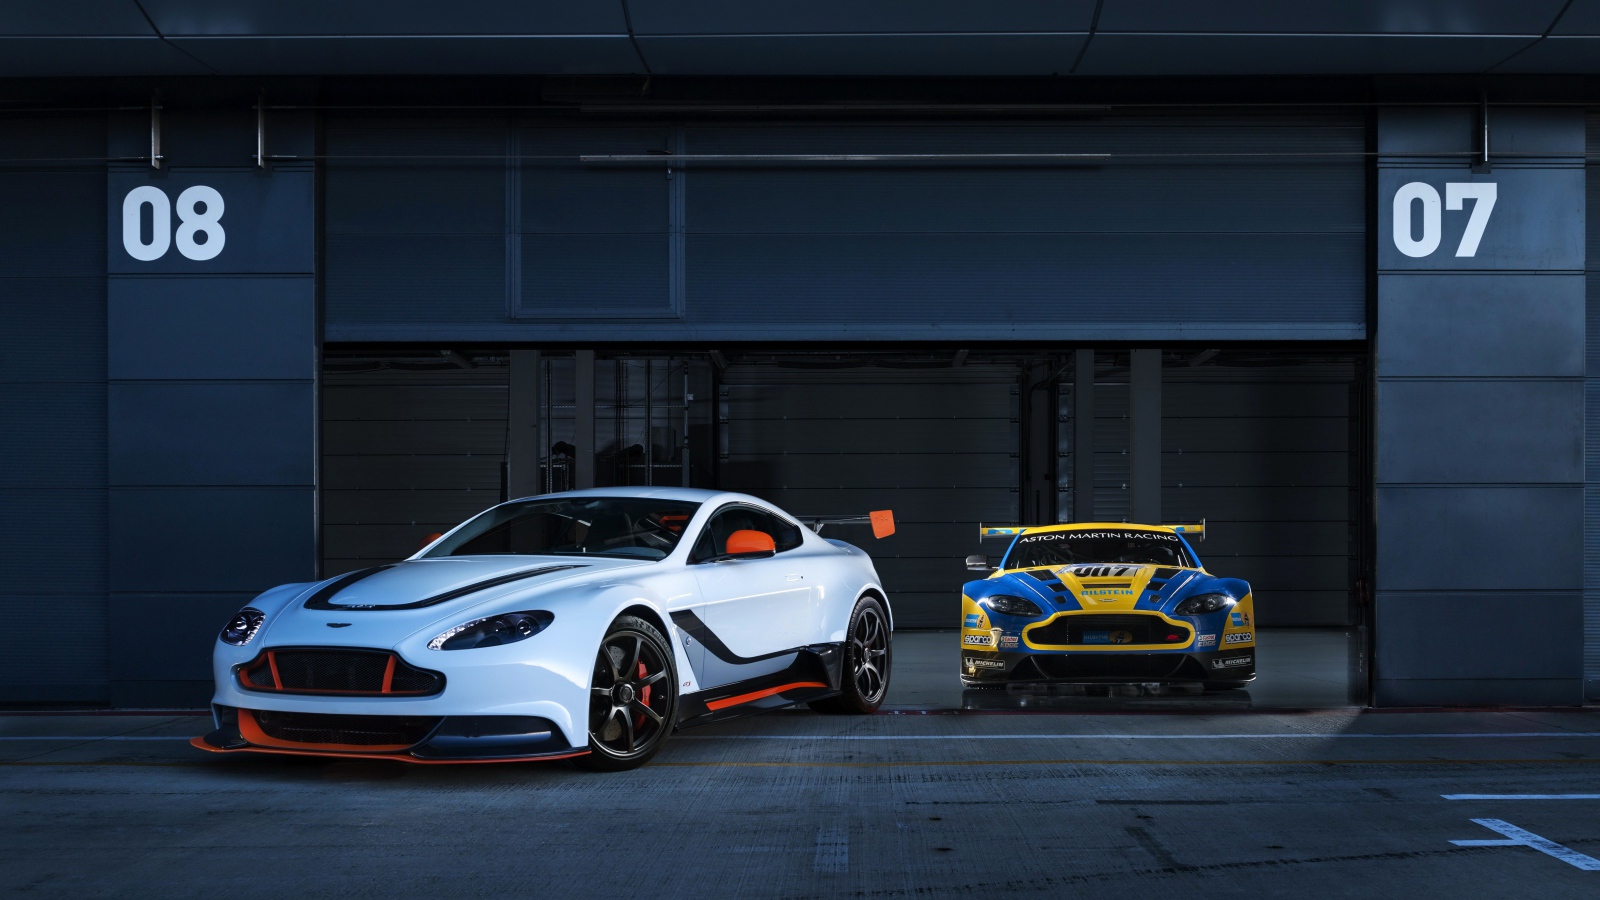 Два авто Aston Martin выезжают из гаража